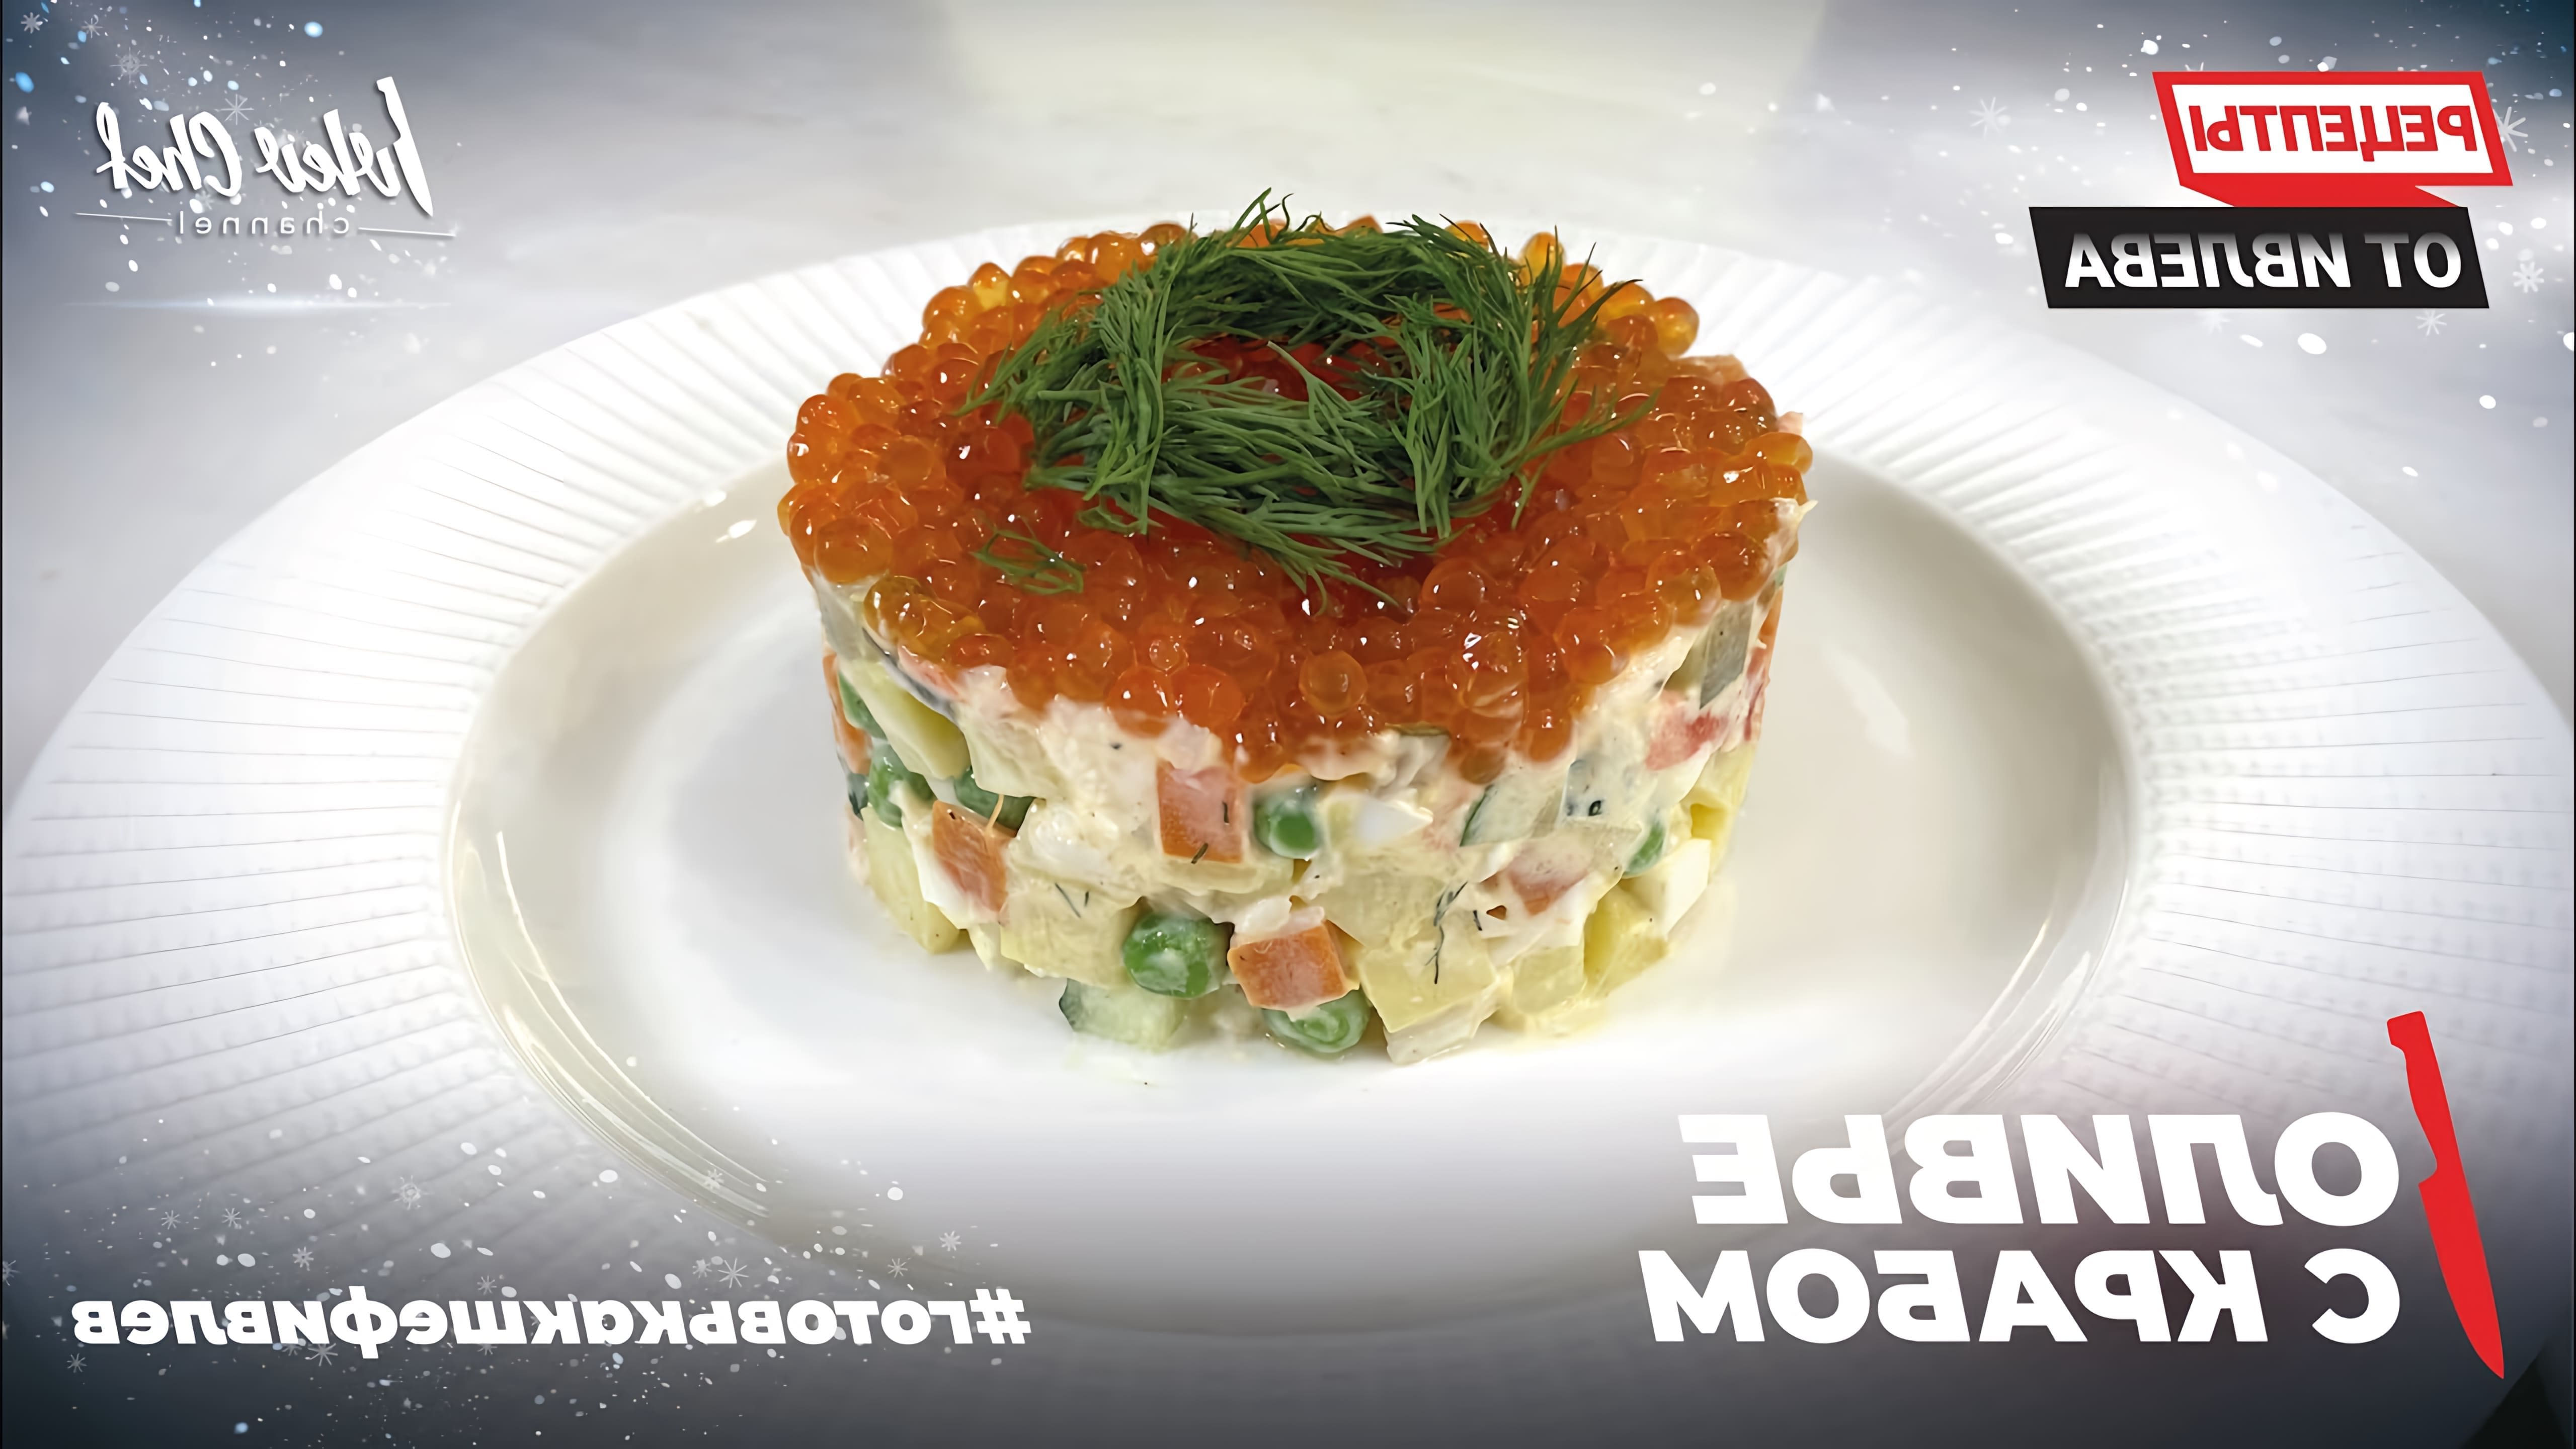 В этом видео шеф-повар Дмитрий рассказывает о конкурсе по изобретению блюда русской кухни, в котором он победил